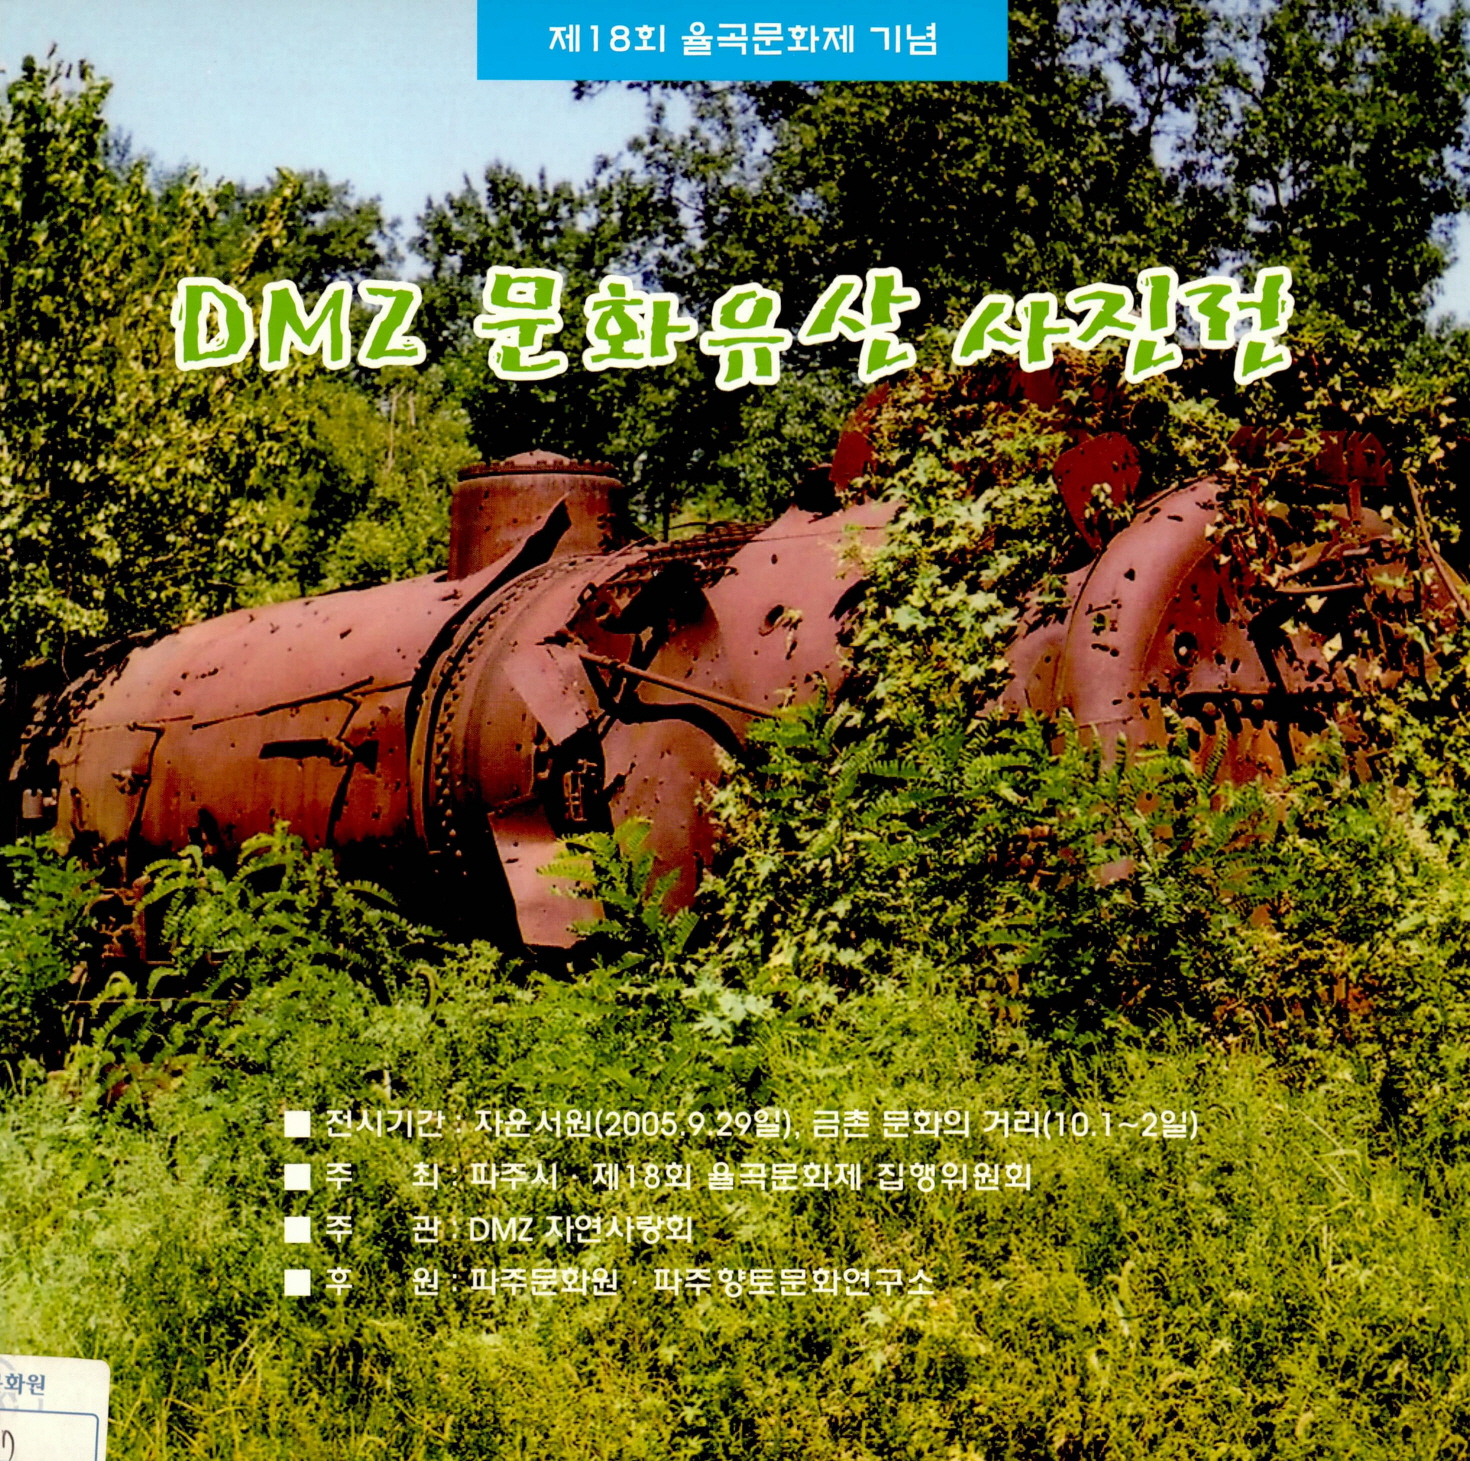 제18회 율곡문화재 기념 DMZ 문화유산 사진전